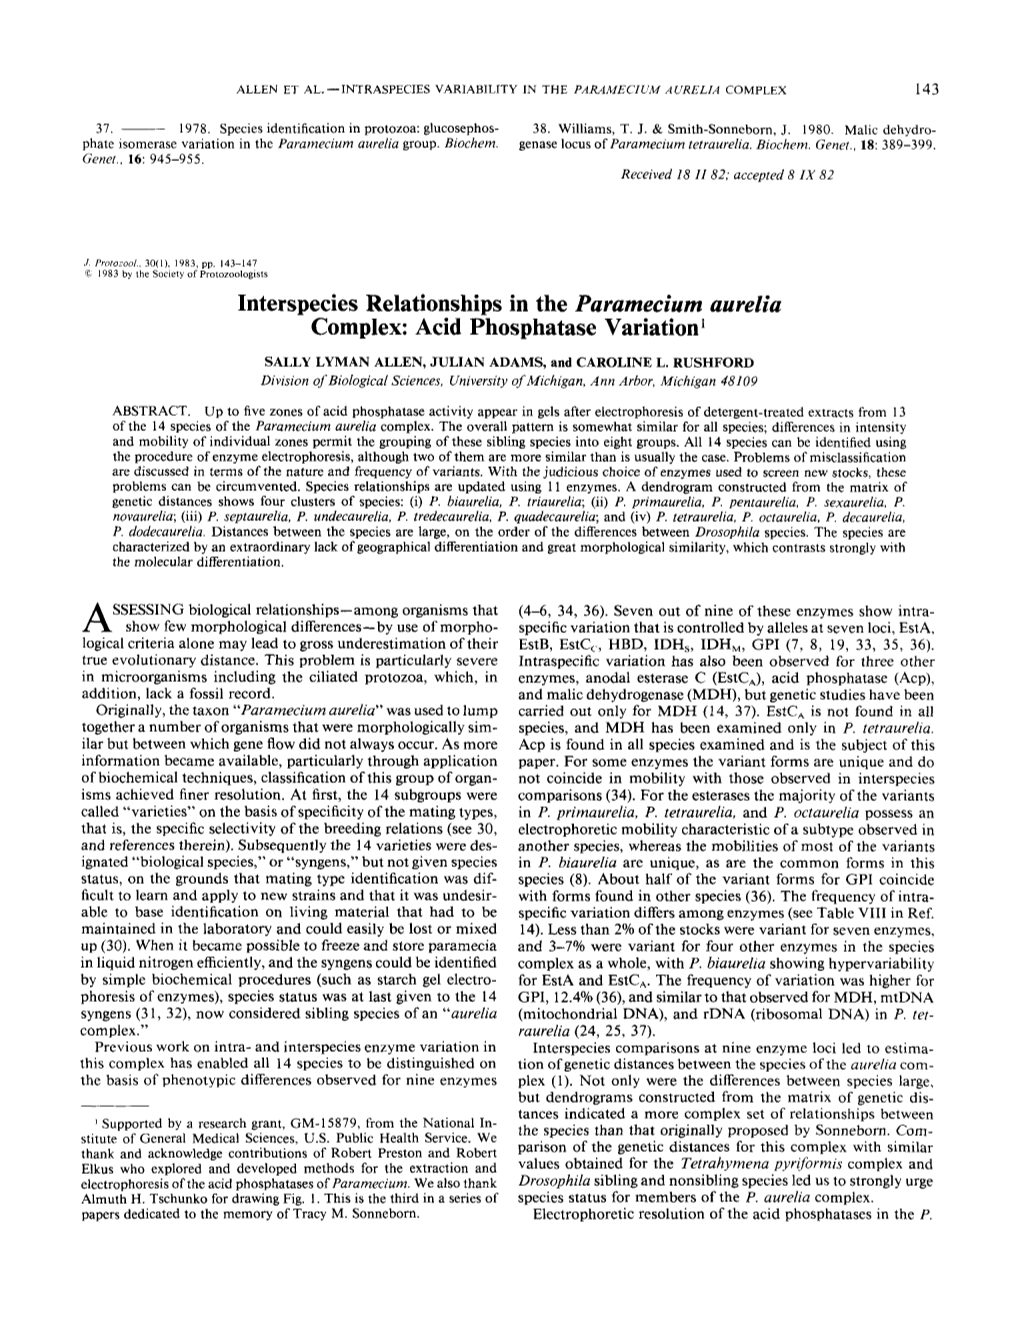 Interspecies Relationships in the Paramecium Aurelia Complex: Acid Phosphatase Variation’